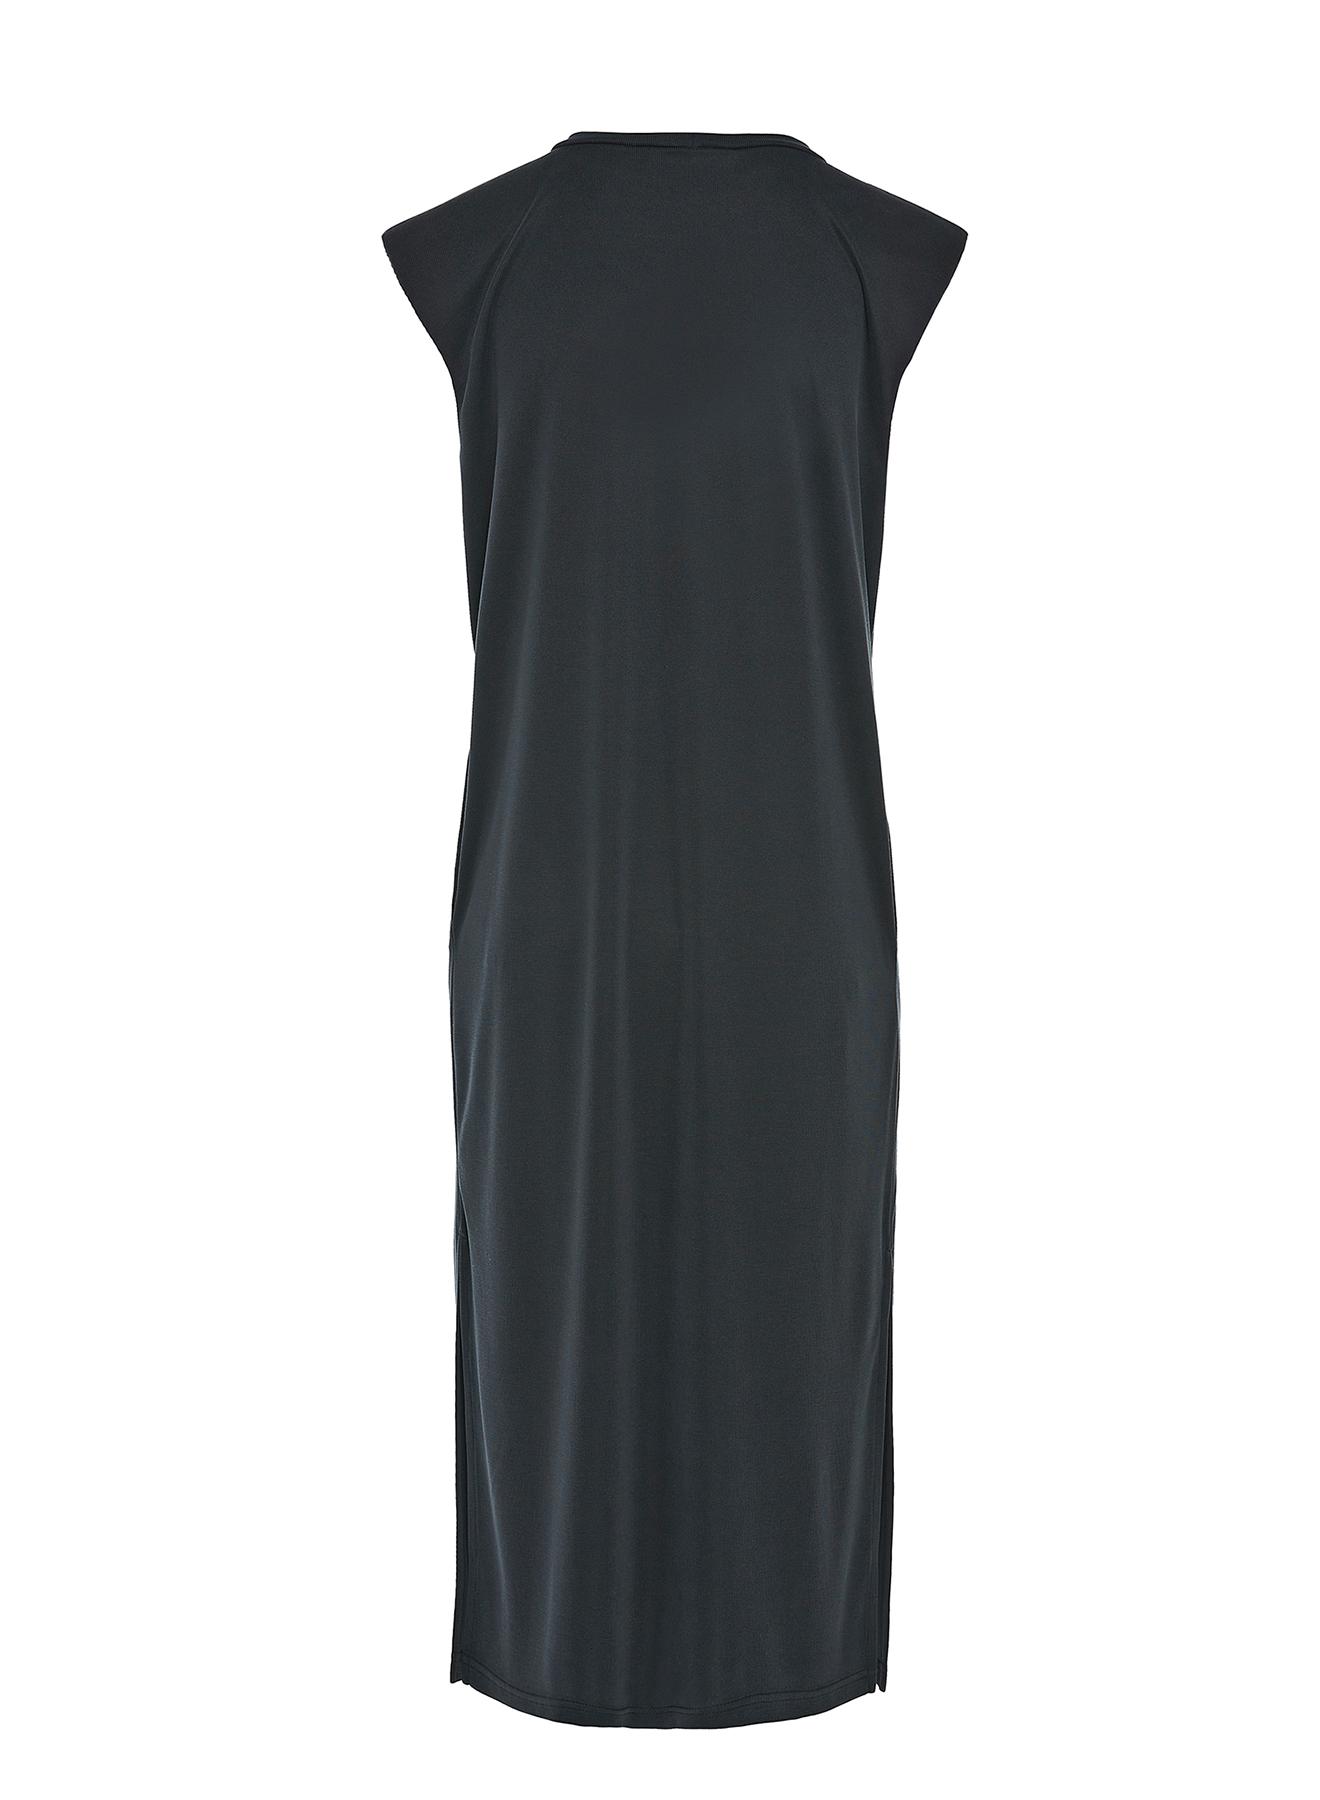 Μαύρο μακρύ Φόρεμα αμάνικο Milla - 2